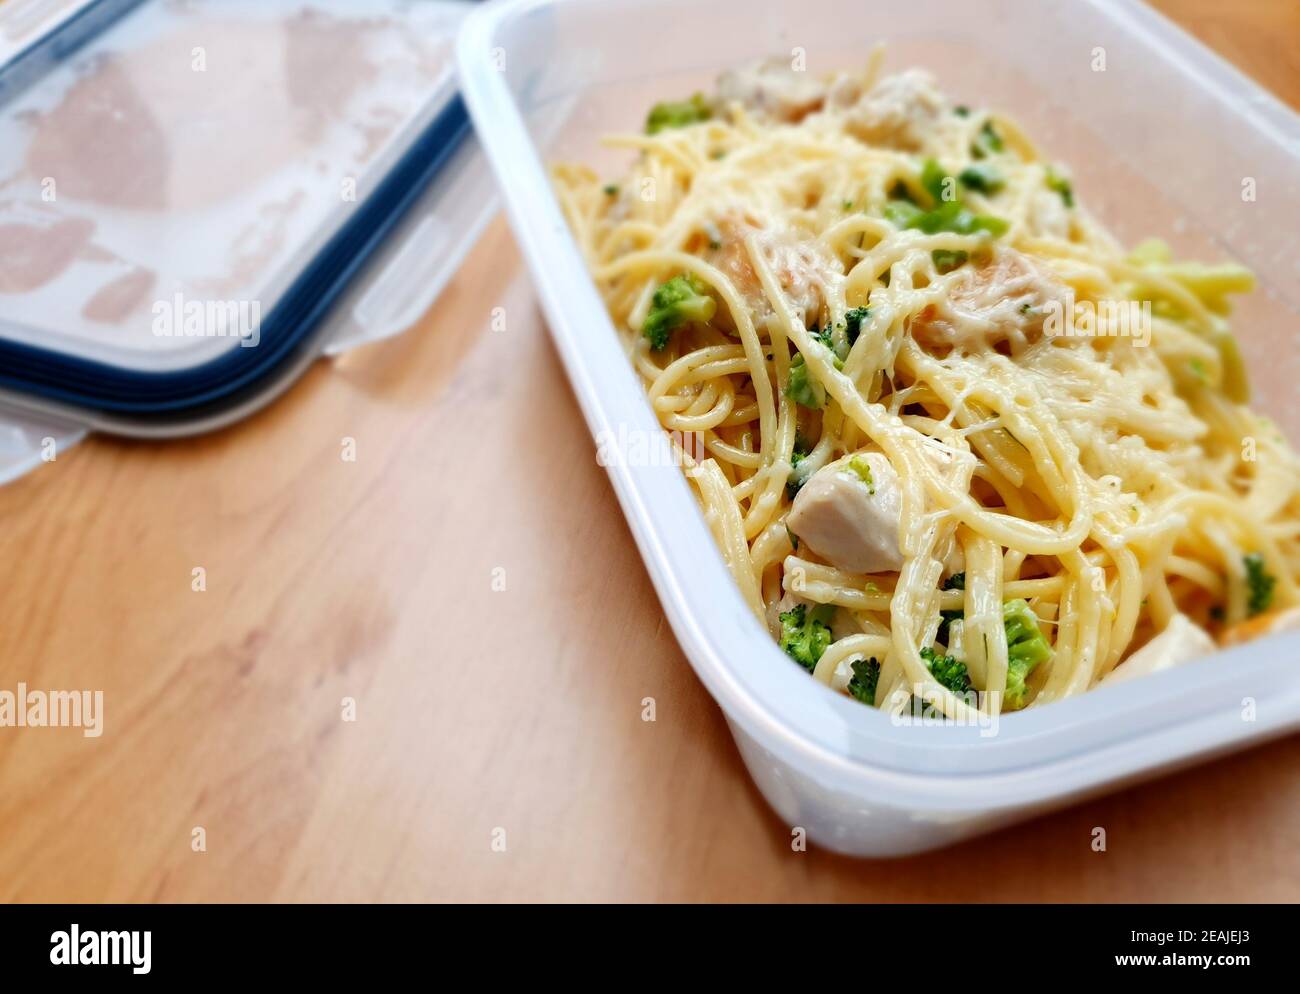 Spaghetti nella scatola, cibo da asporto. Foto Stock